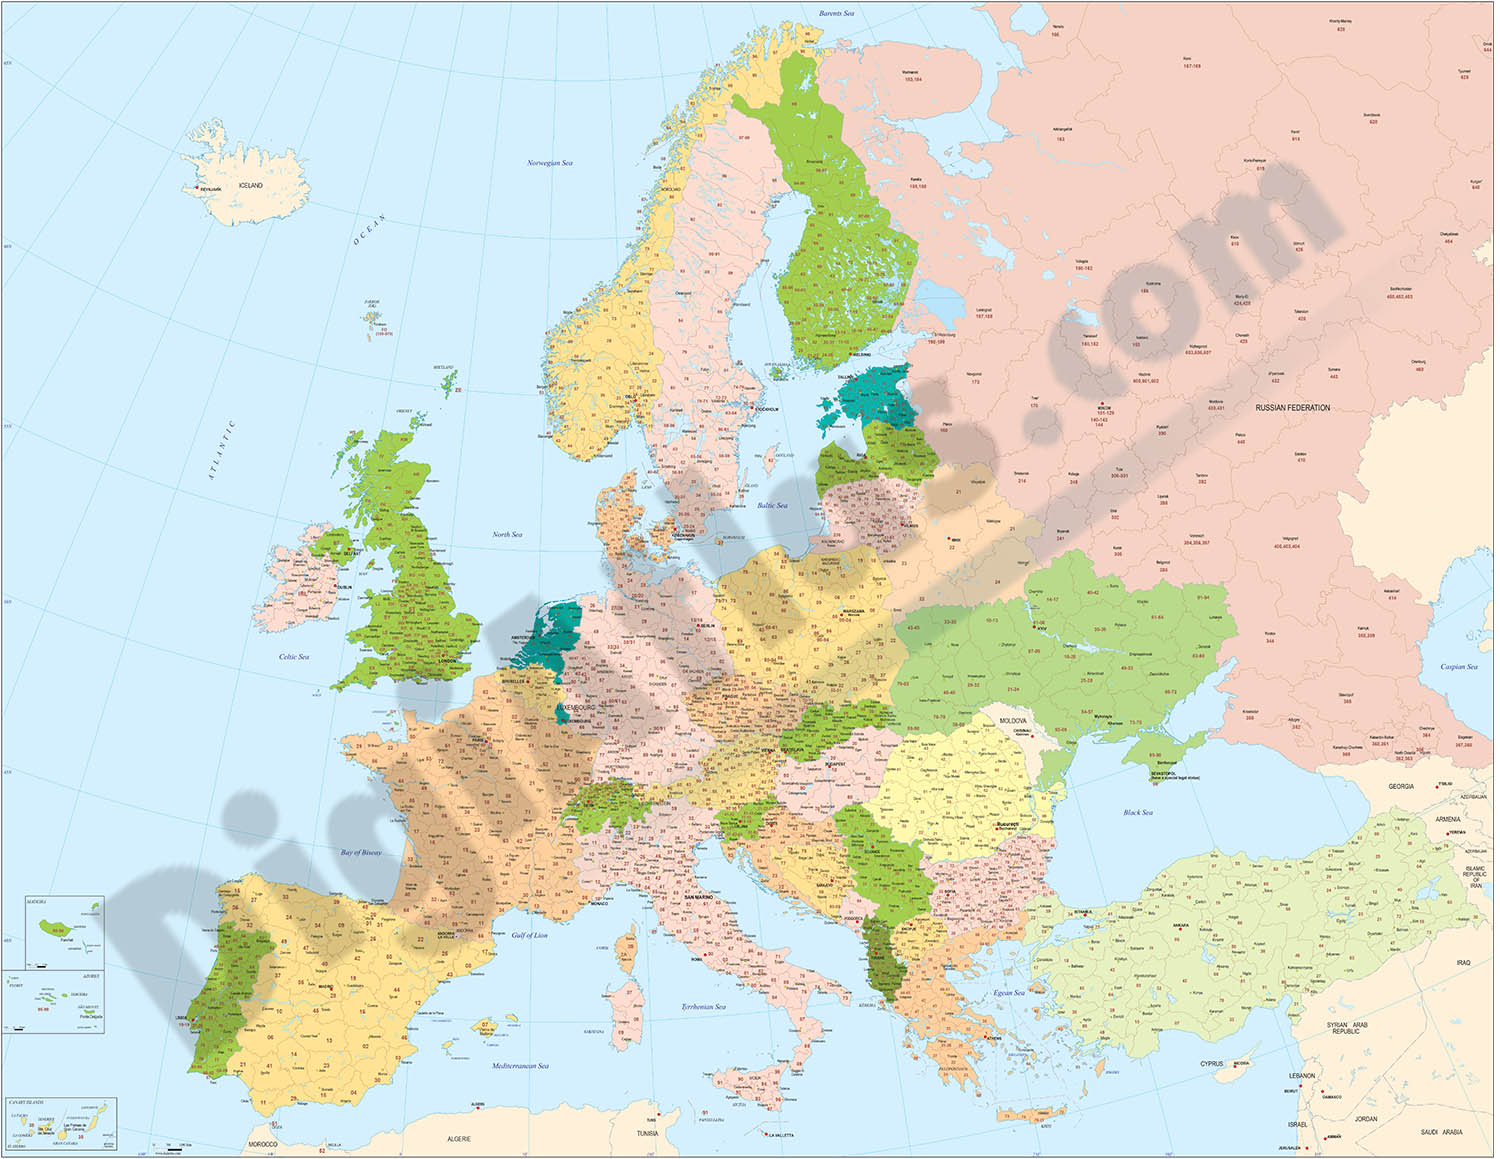  Mapa de Europa con Códigos Postales